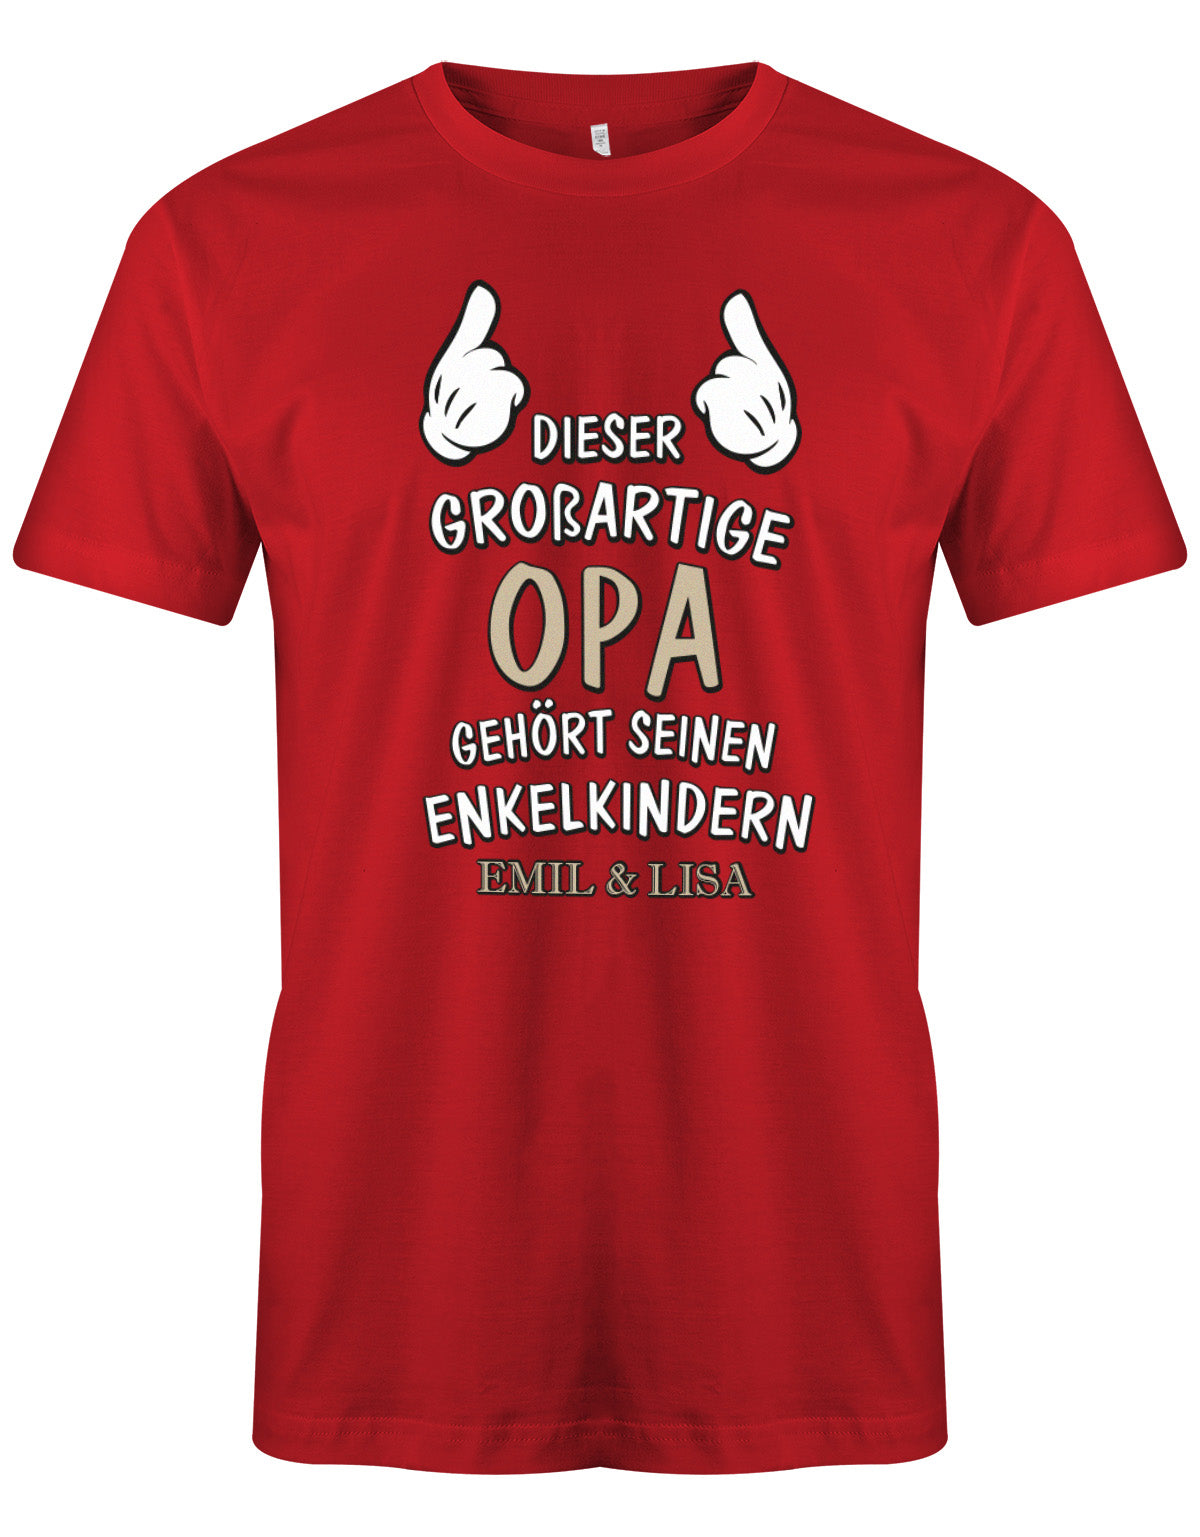 Opa Shirt personalisiert - Dieser großartige Opa gehört seinen Enkelkindern. Mit Namen der Enkel. Rot